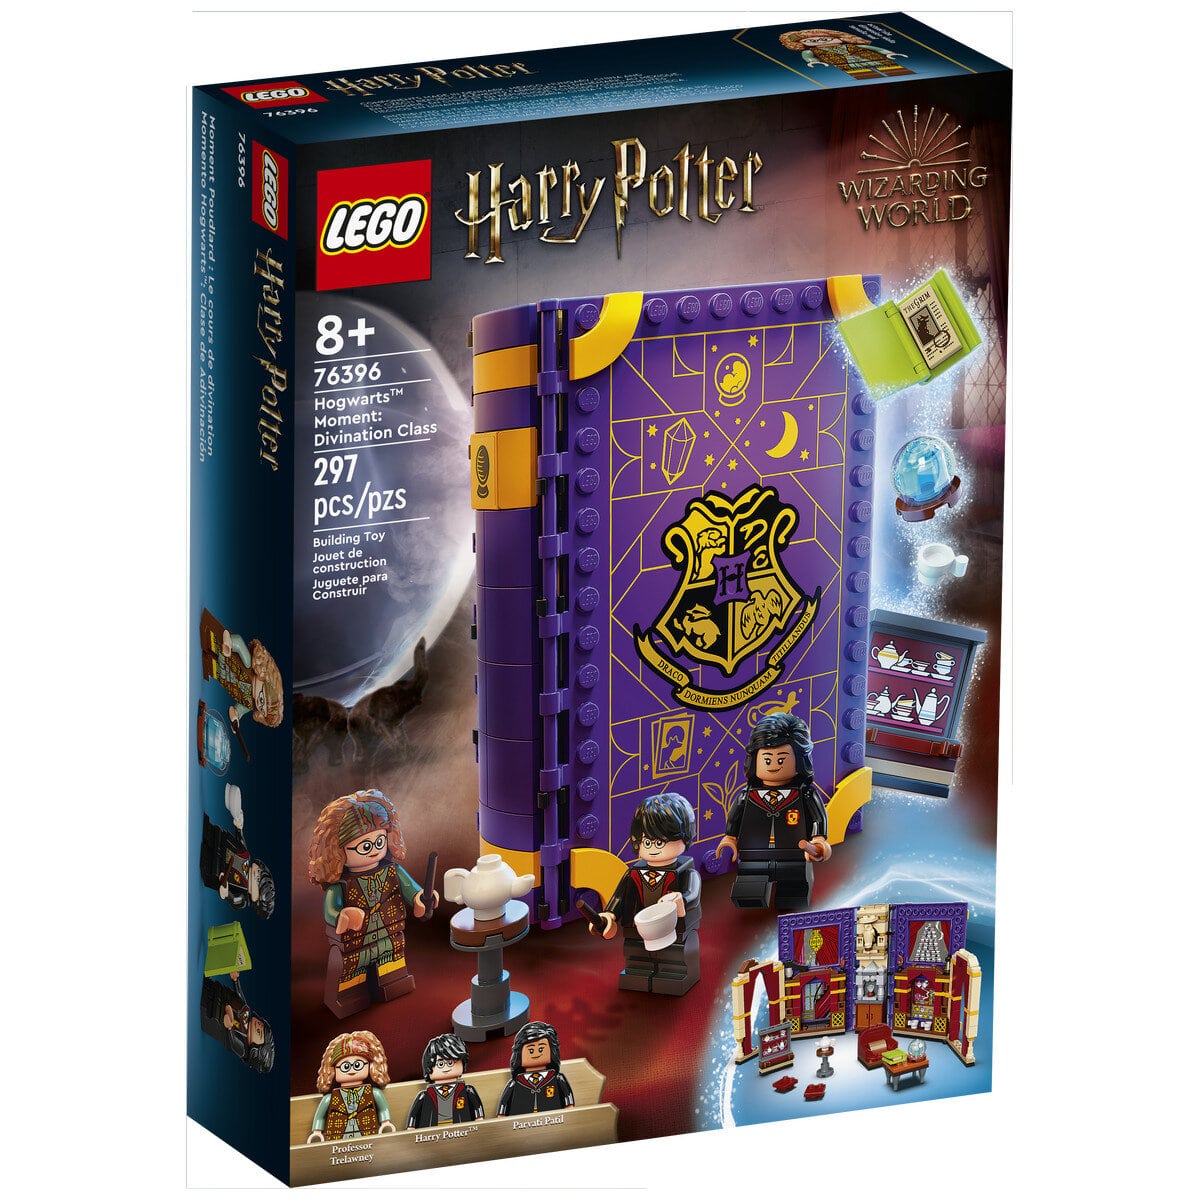 Tous les livres de la collection Lego Harry Potter, Librairie Poirier